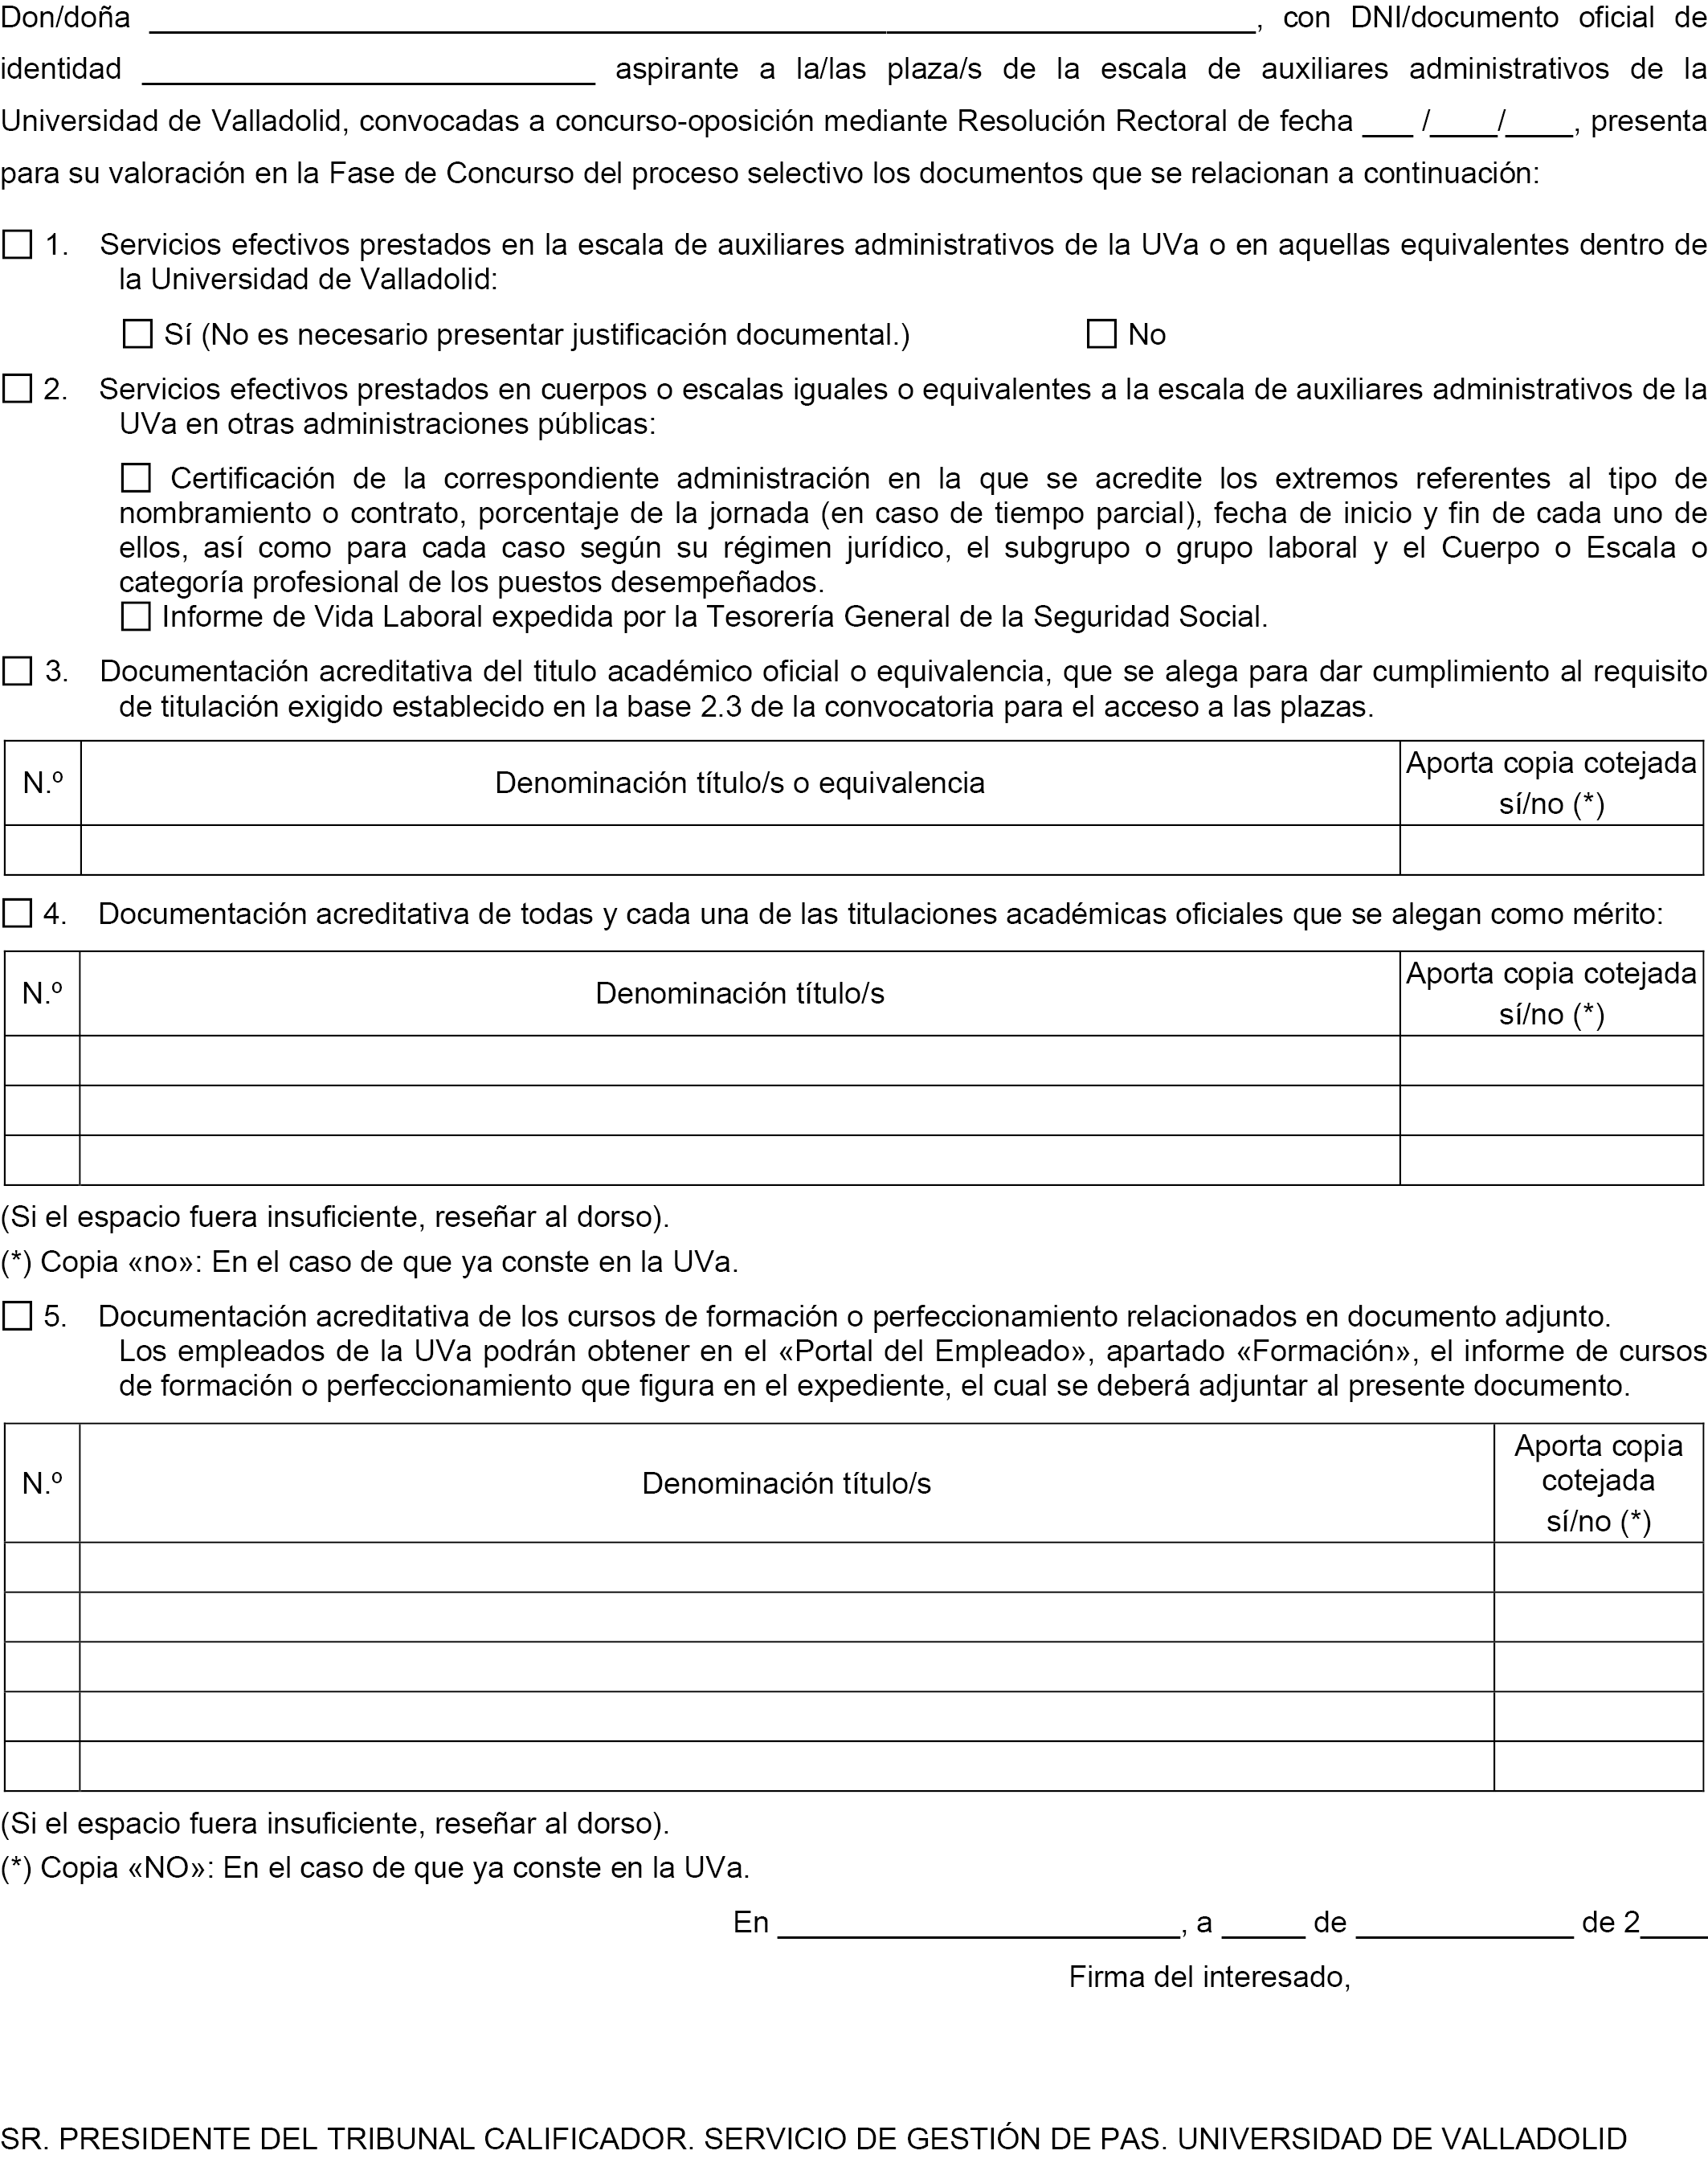 BOE.es - BOE-A-2020-14498 Resolución de 5 de noviembre de 2020, de la  Universidad de Valladolid, por la que se convoca proceso selectivo para  ingreso en la Escala de Auxiliares Administrativos.